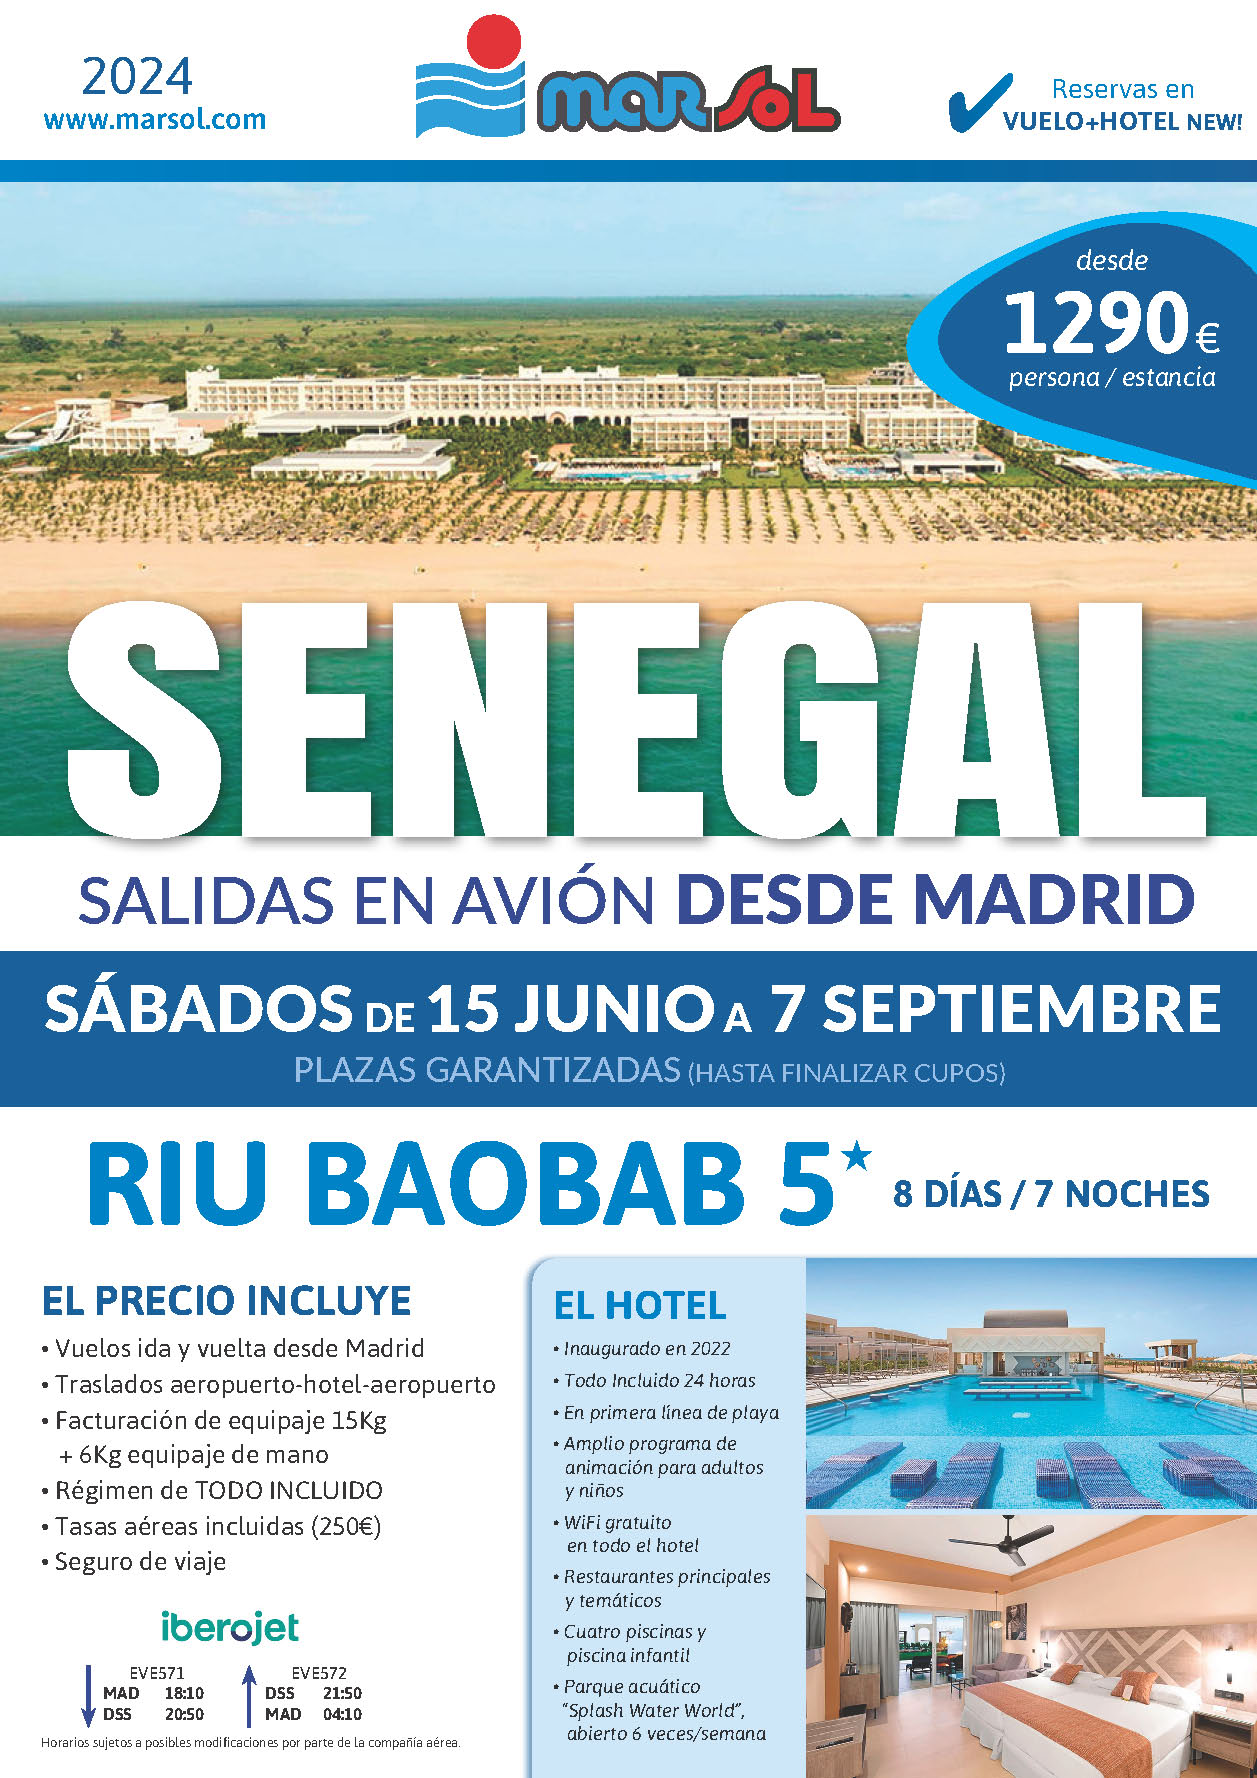 Oferta Marsol Estancia en Senegal Hotel Riu Baobab 5 estrellas Todo Incluido 8 dias salidas Junio a Septiembre 2024 vuelo directo desde Madrid